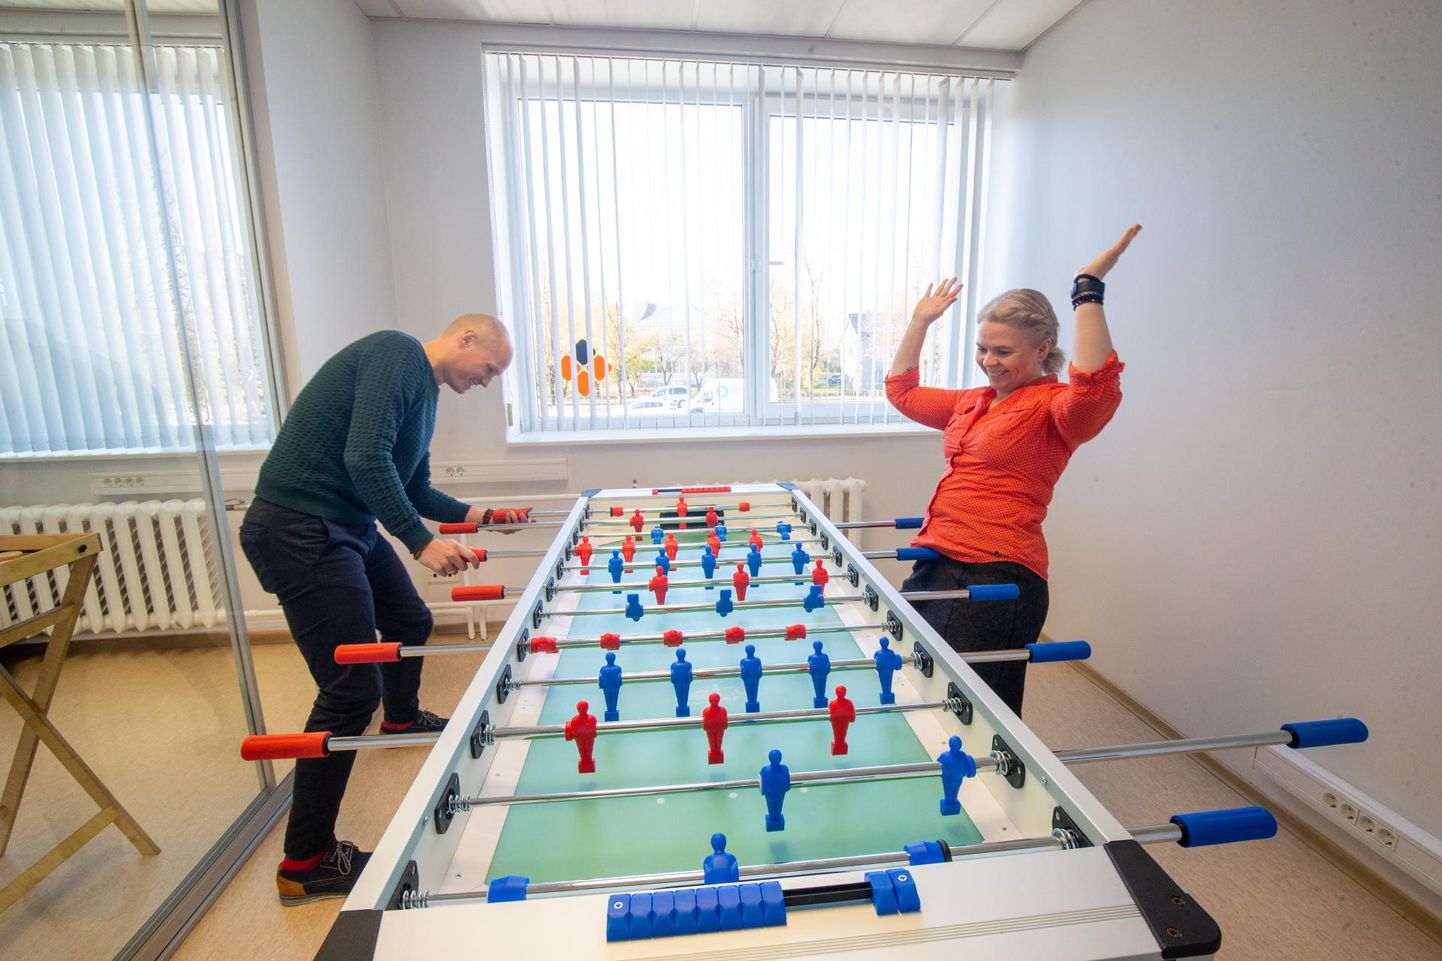 Tartu Erakooli õpetajad Andre Pettai ja Kristi Kartašev treenivad koolivaheajal õpetajaid. Mitte küll lauajalgpallis, vaid õpilaste motivatsiooni mõistmises.